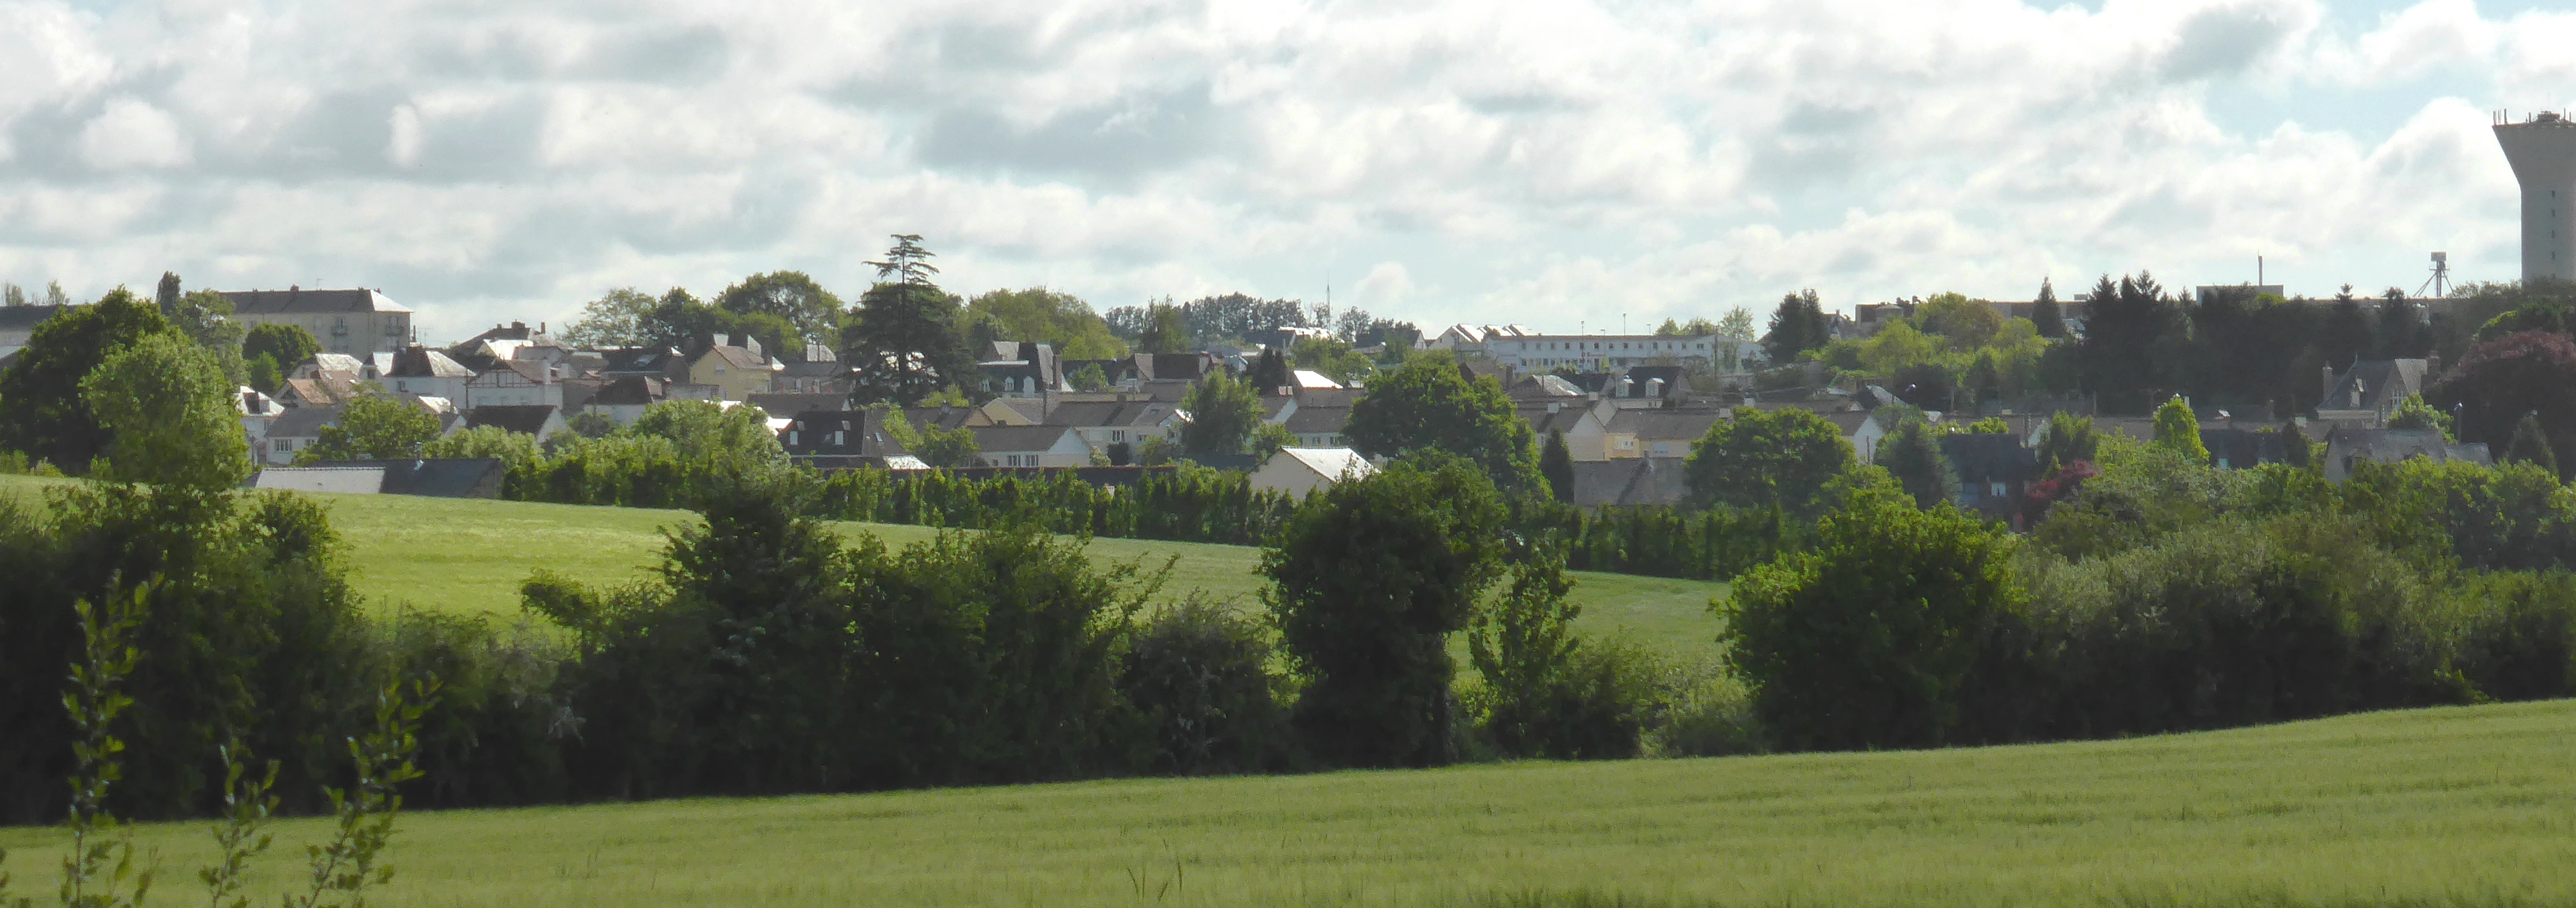 Les développements urbains de Mayenne sont visibles depuis l'autre rive de la rivière (Saint-Baudelle – 2015) en grand format (nouvelle fenêtre)